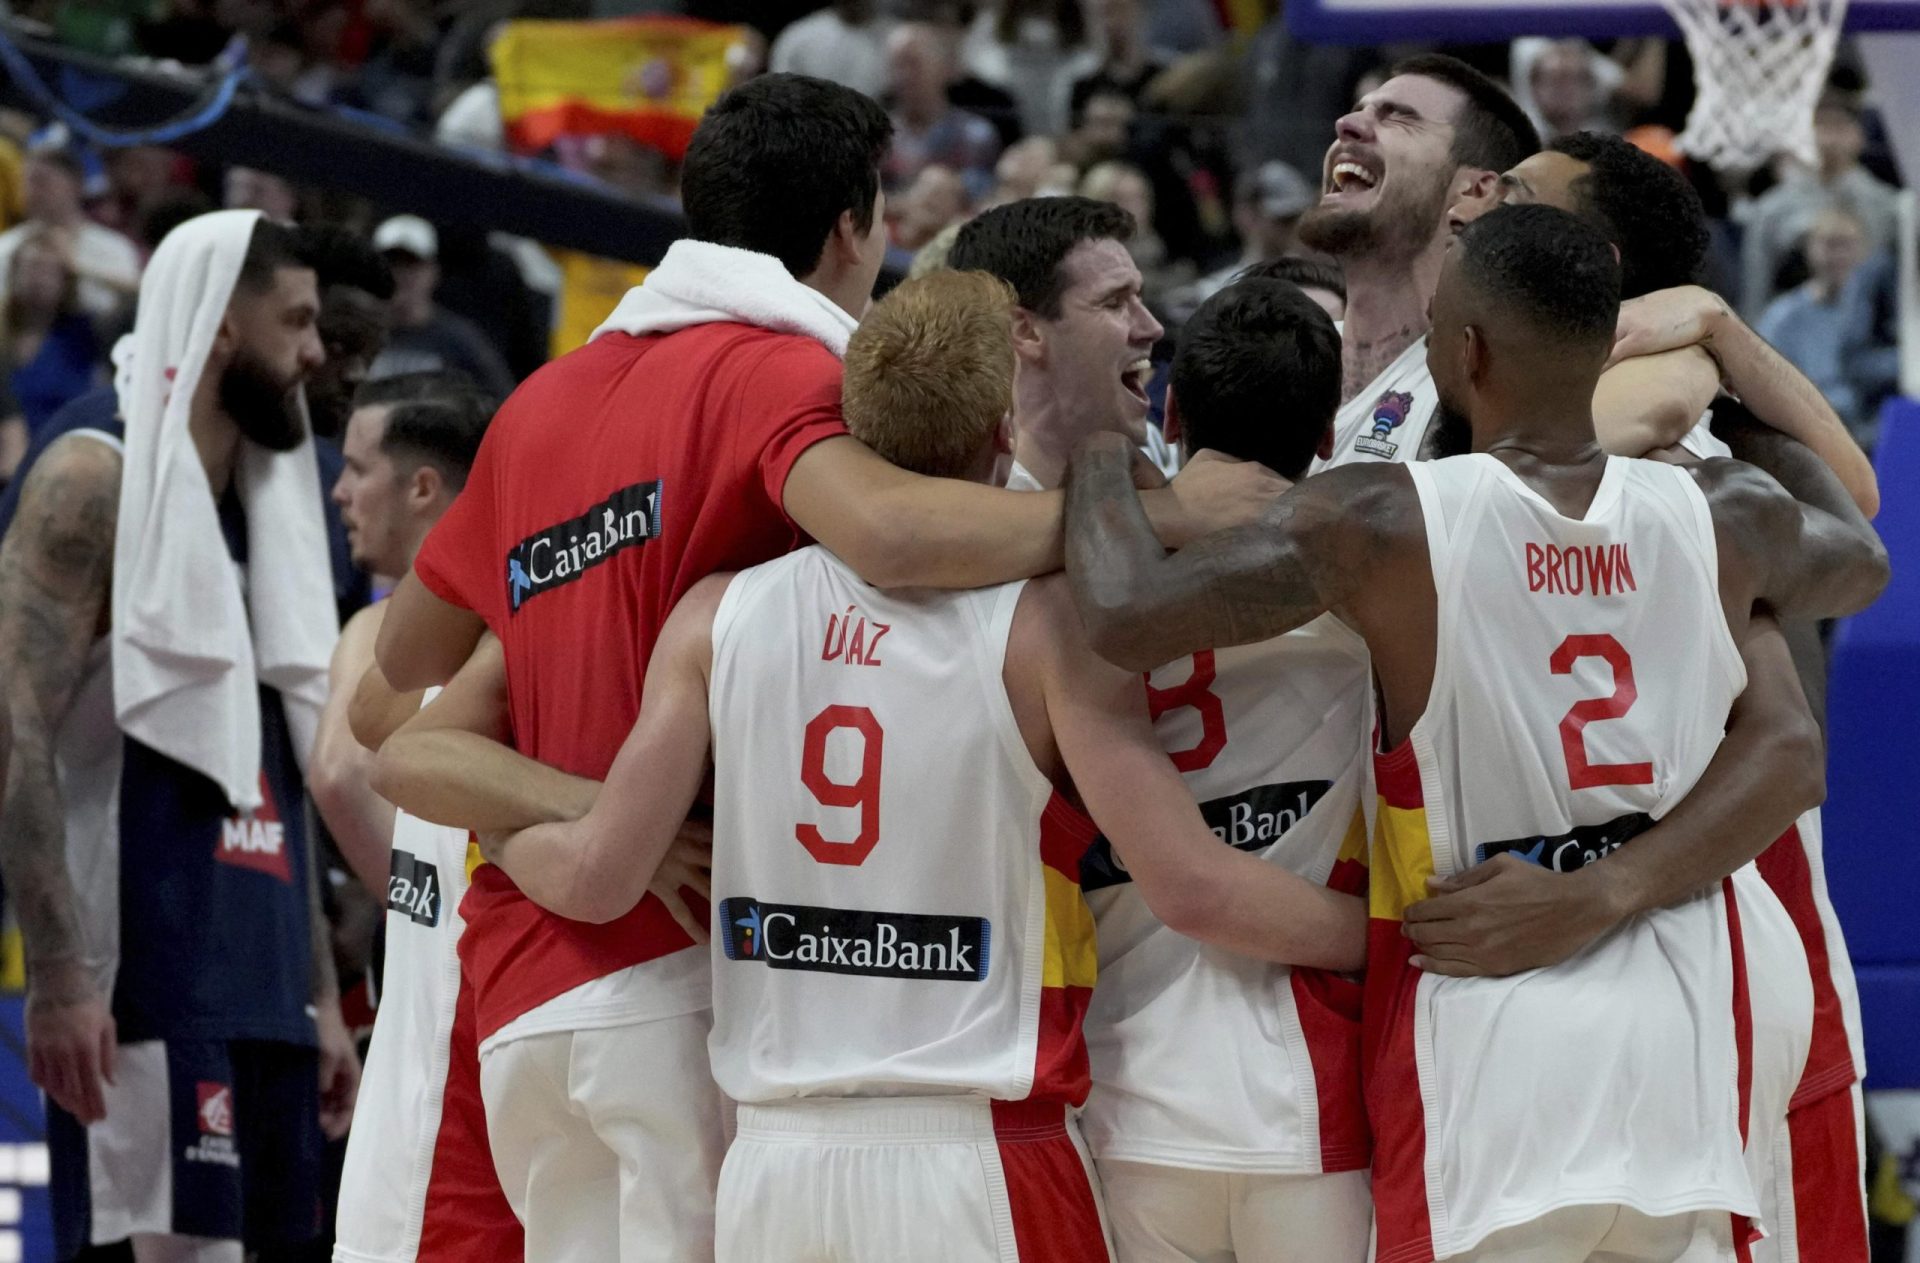 España gana el título del EuroBasket, superando a Francia 88-76 por el oro